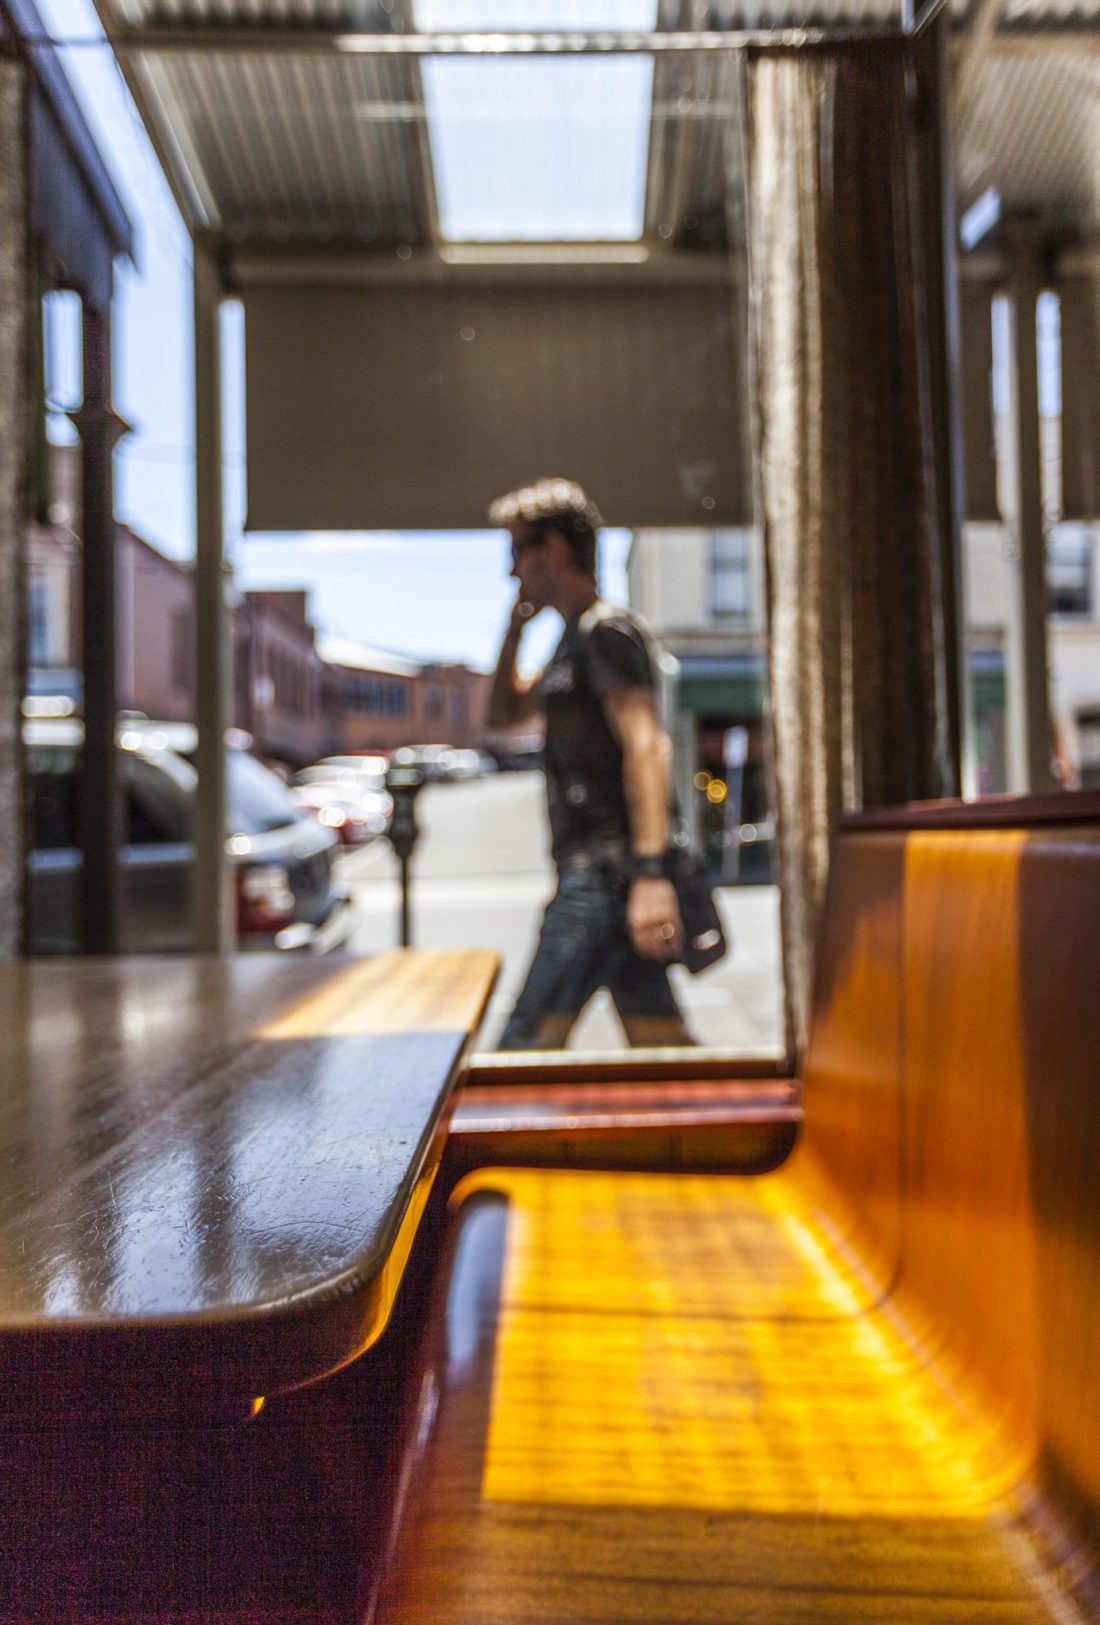 Main Bar Ballarat interior street view_Aldona Kmiec Editorial Photography